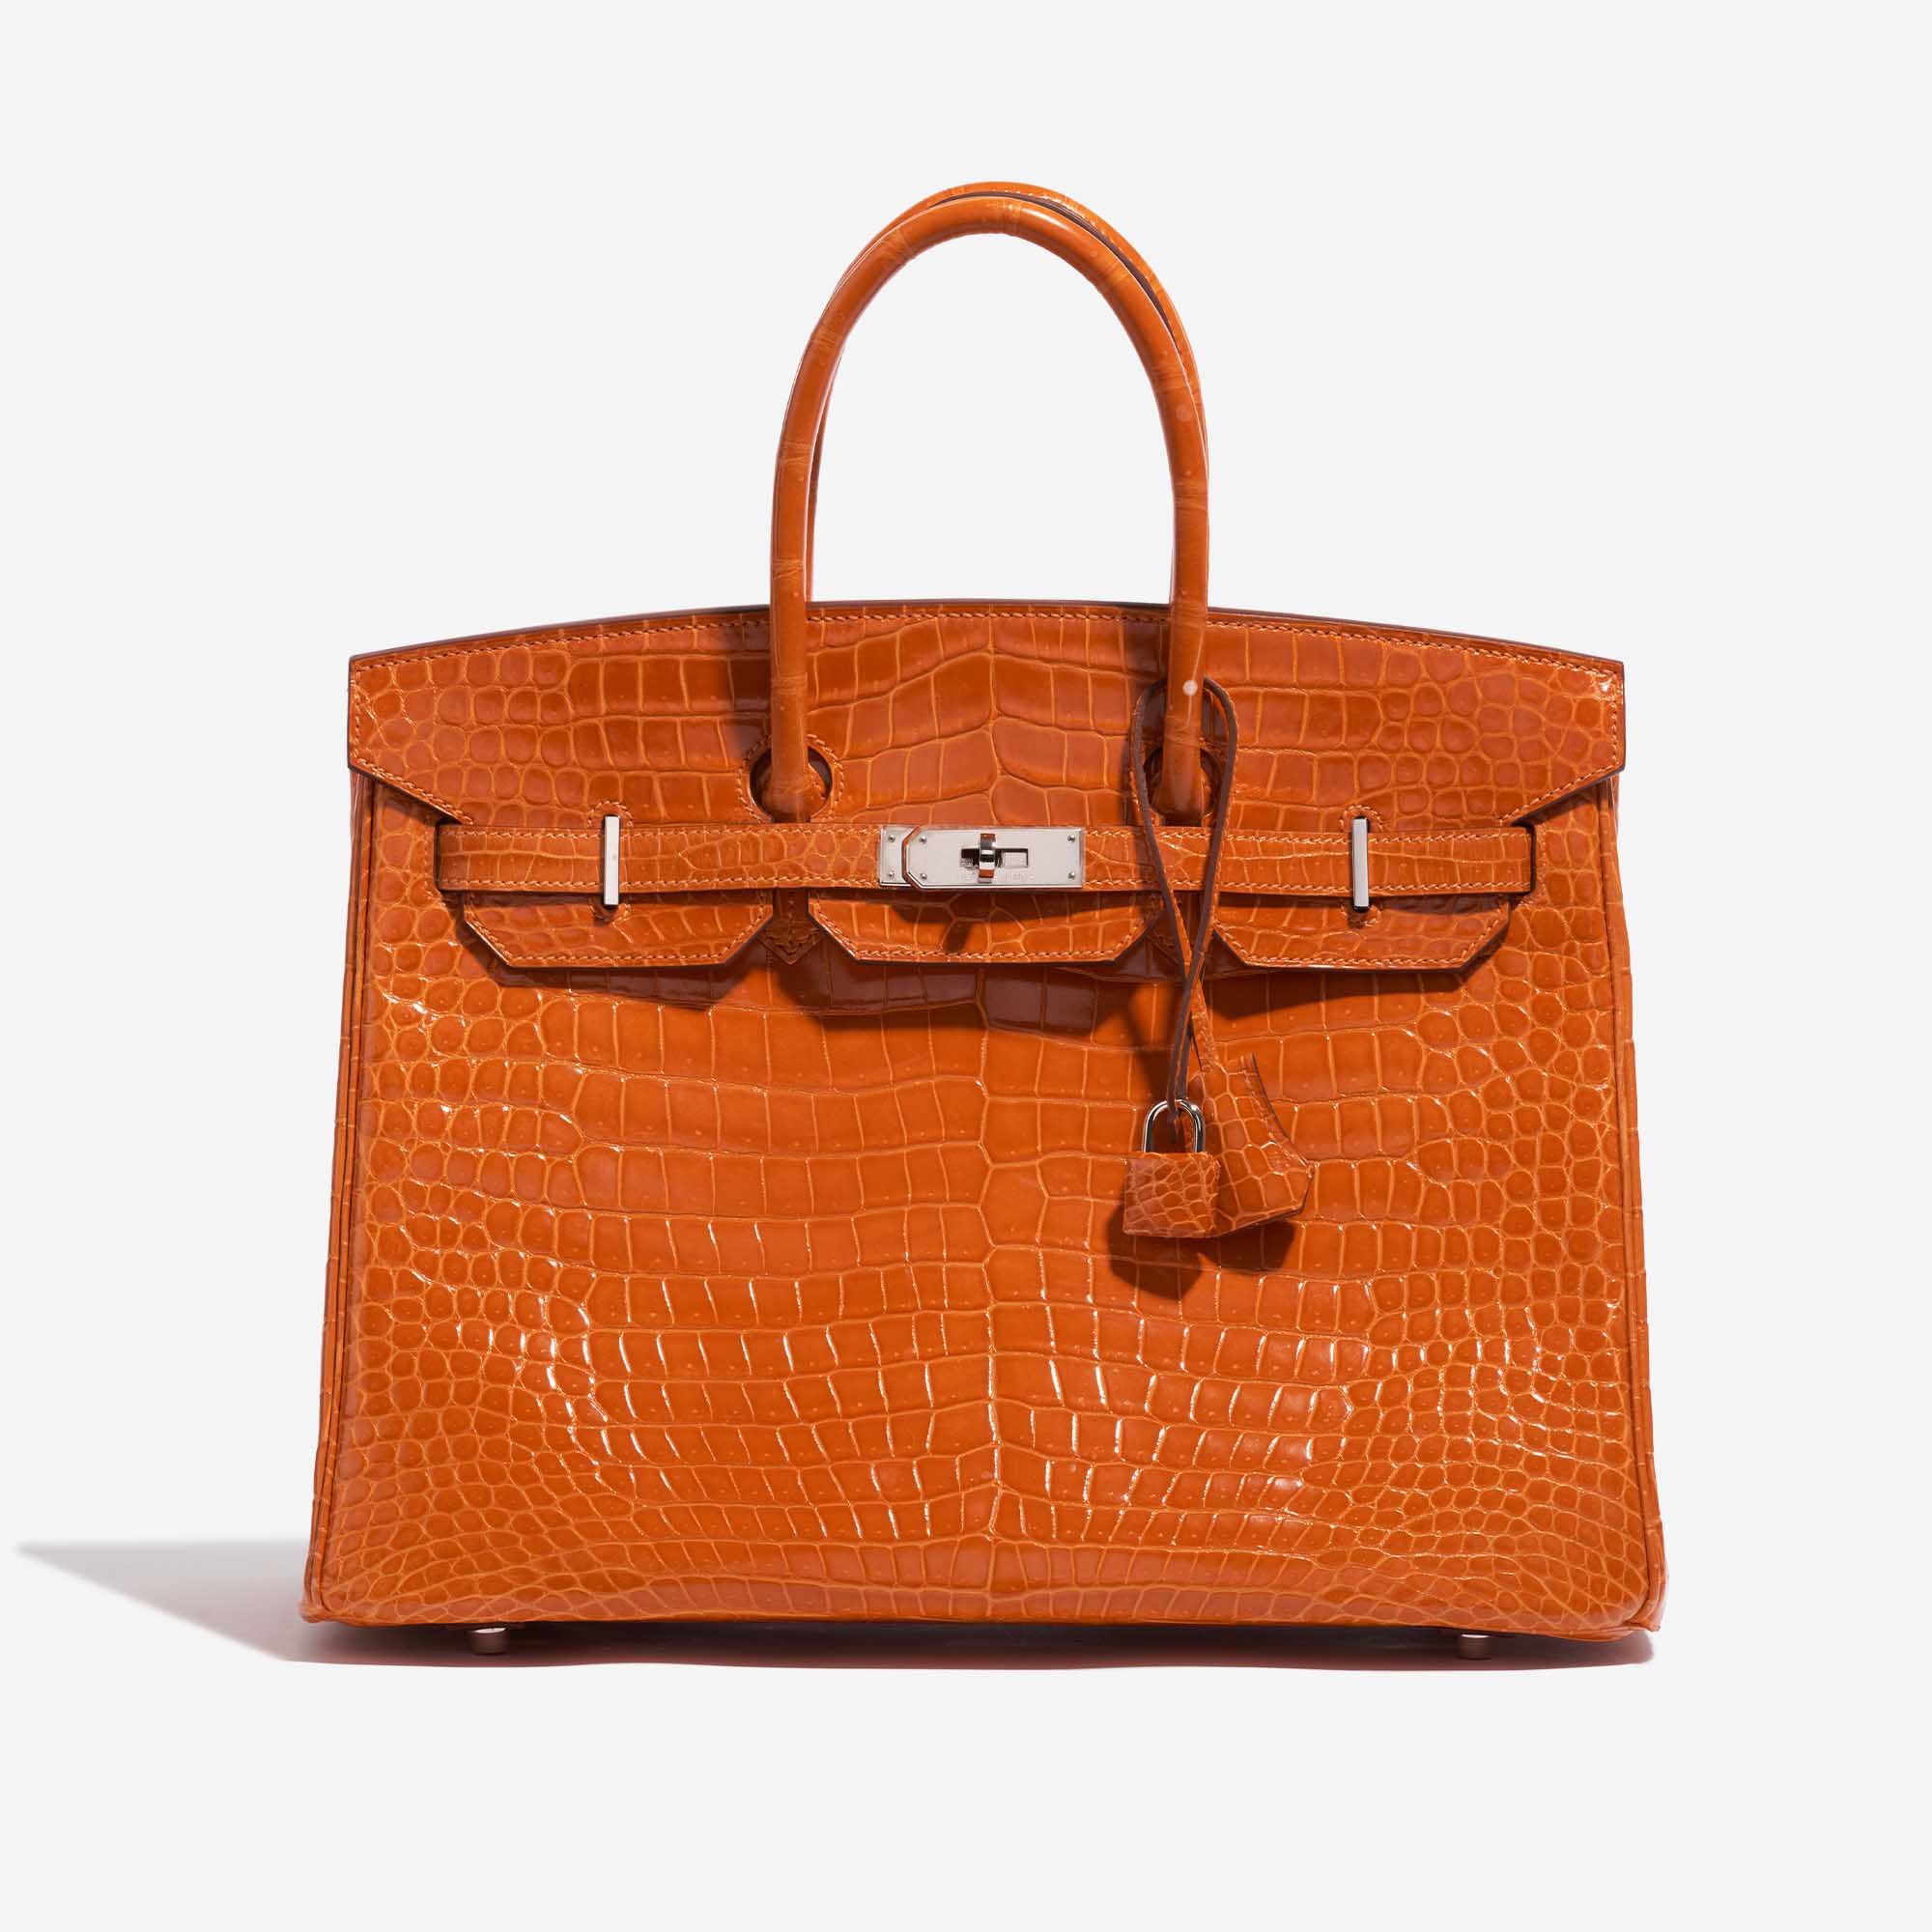 Pre-owned Hermès bag Birkin 35 Porosus Crocodile Pain d’épice Orange Front | Sell your designer bag on Saclab.com